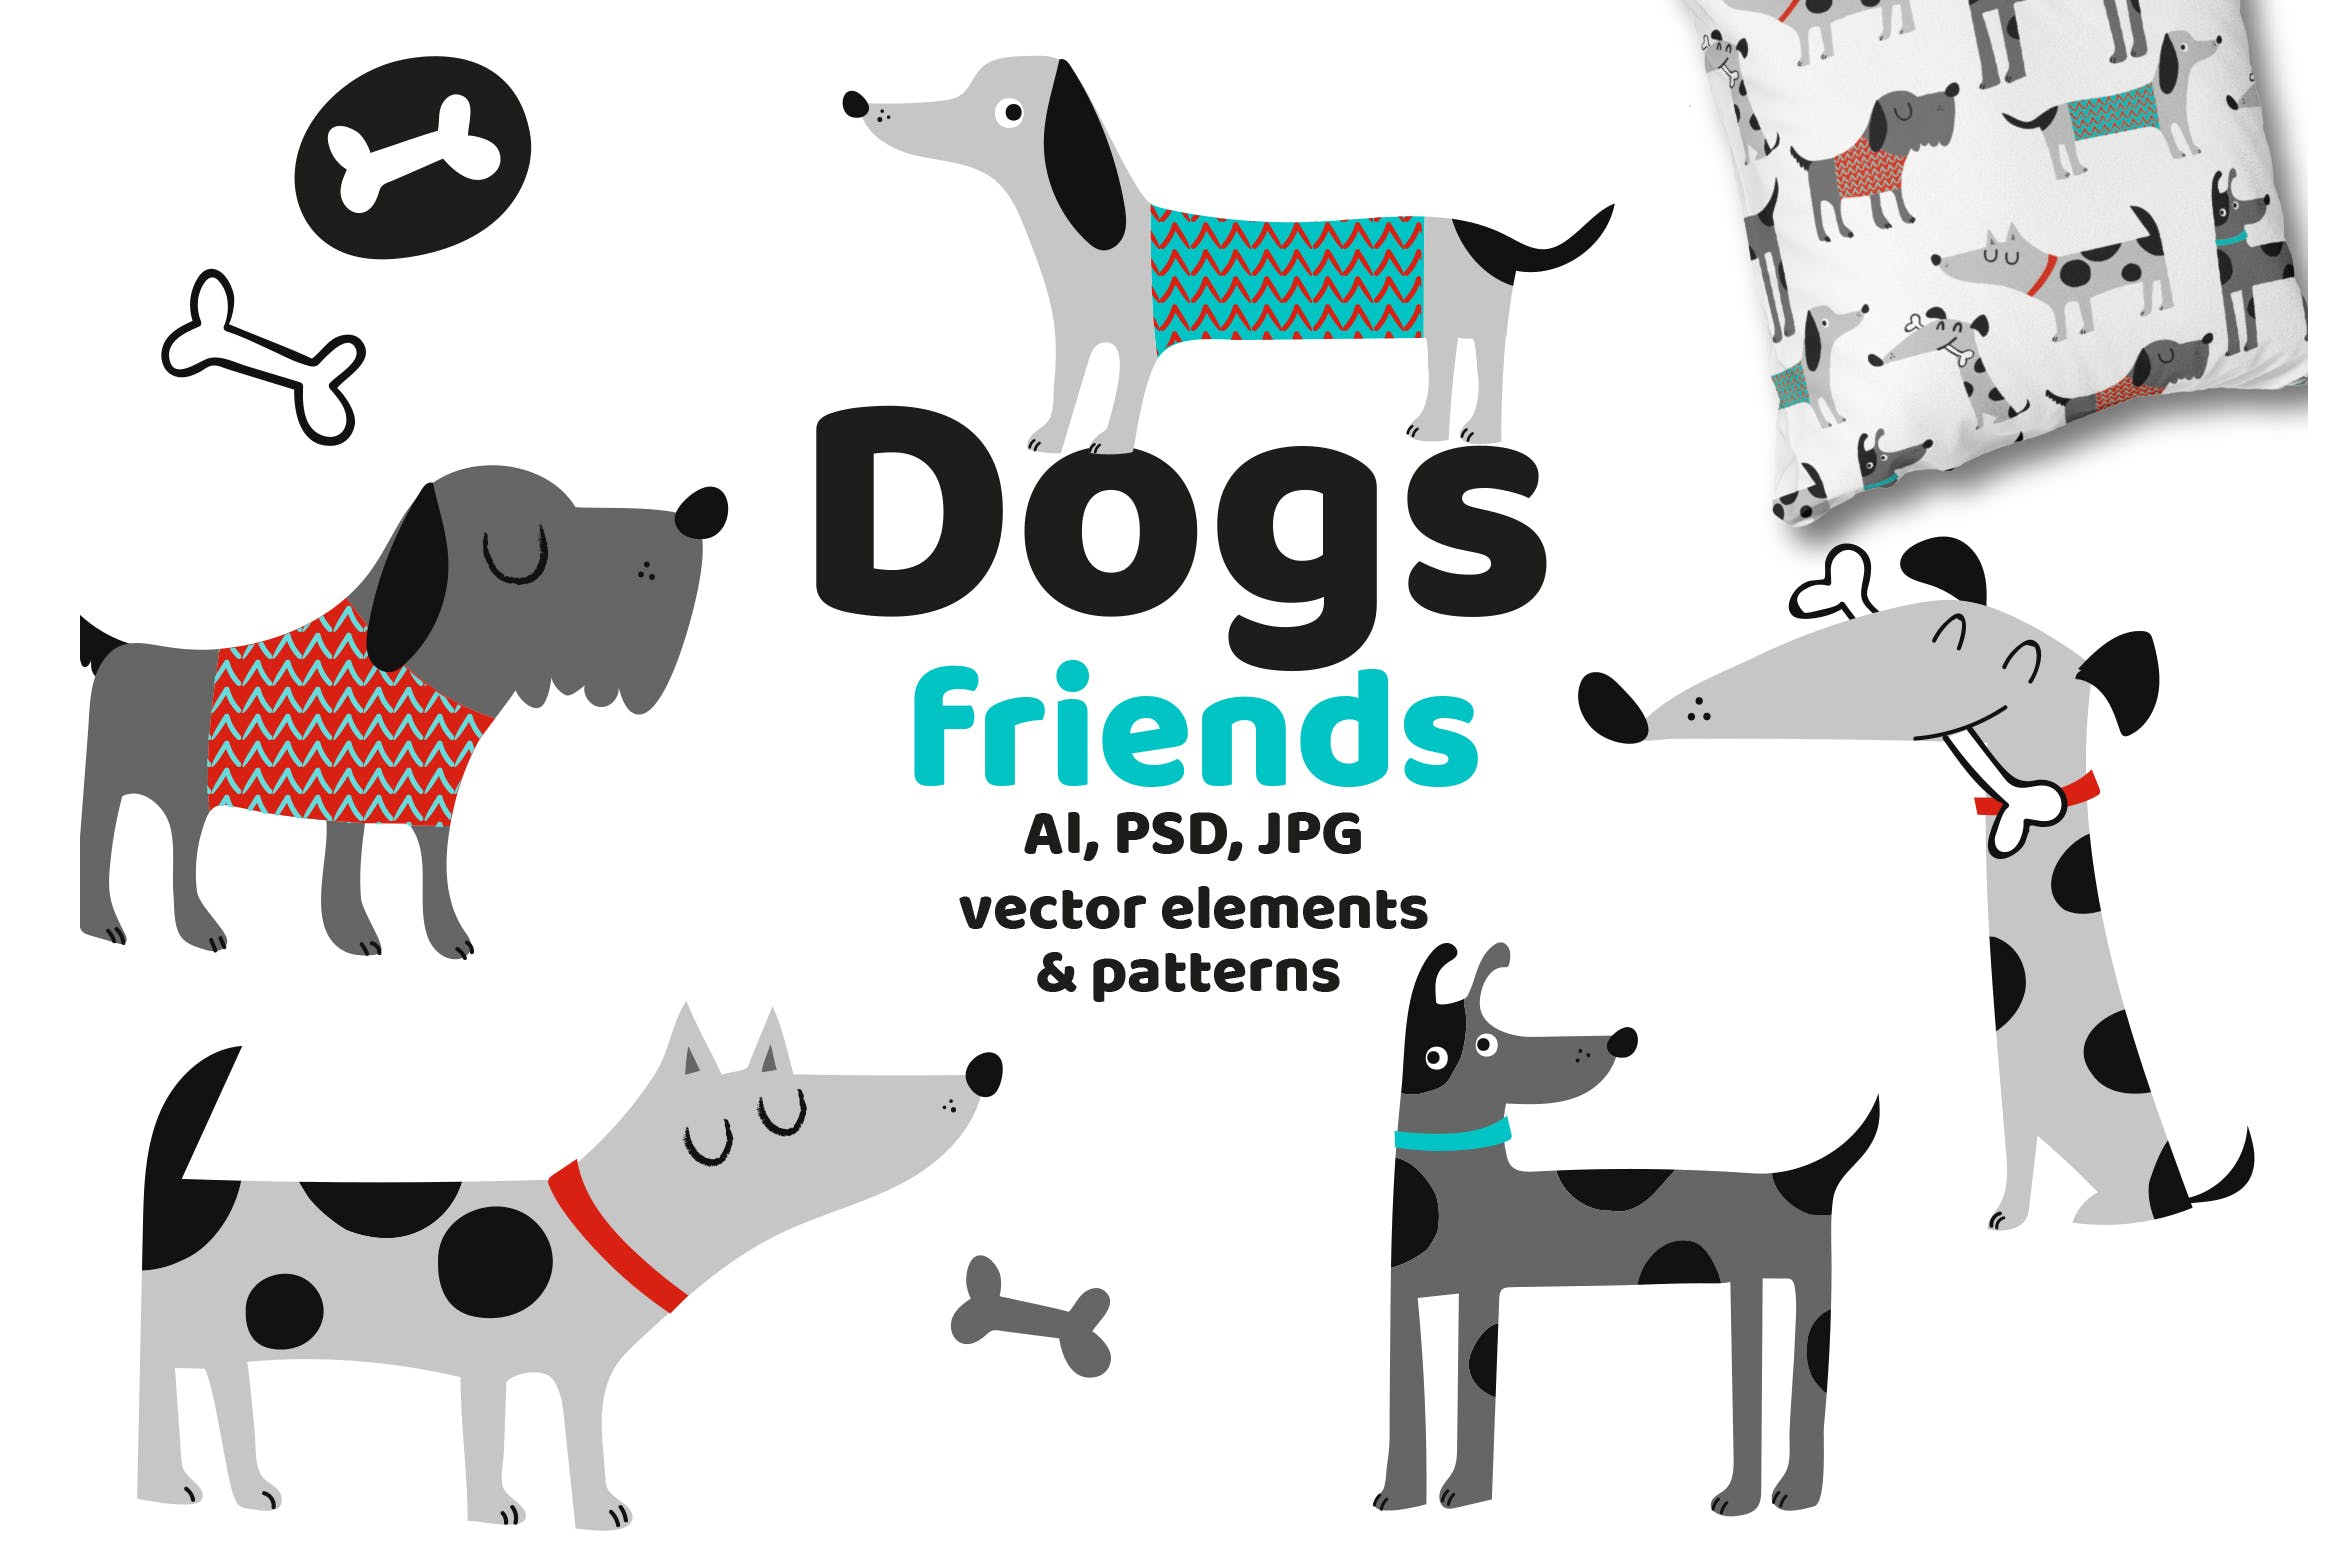 可爱卡通动物手绘图案背景大洋岛精选 Dogs Friends插图